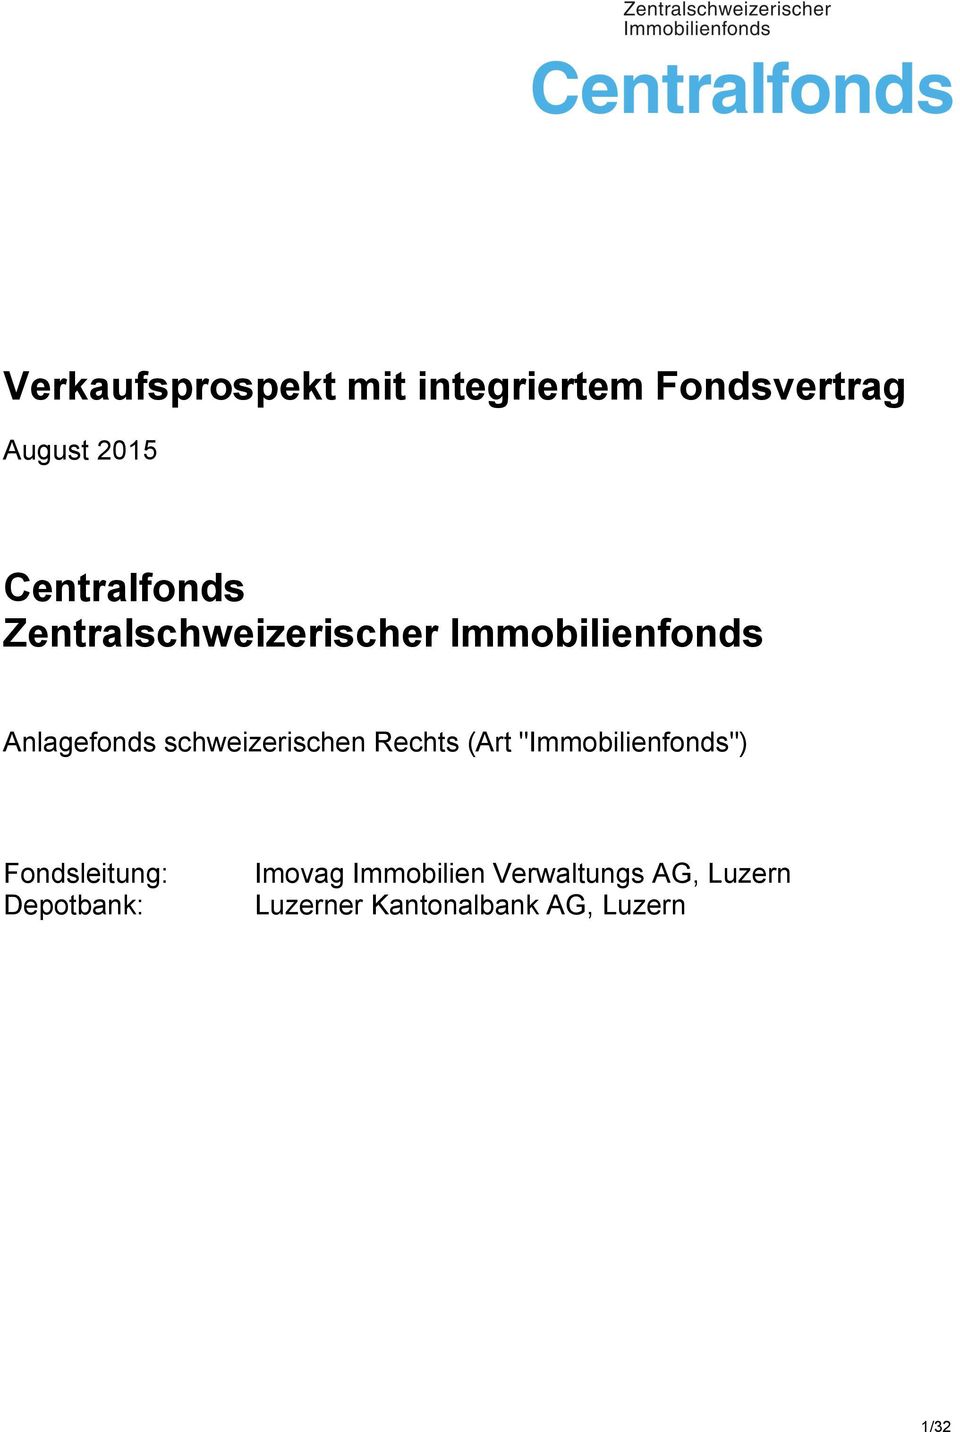 schweizerischen Rechts (Art "Immobilienfonds") Fondsleitung: